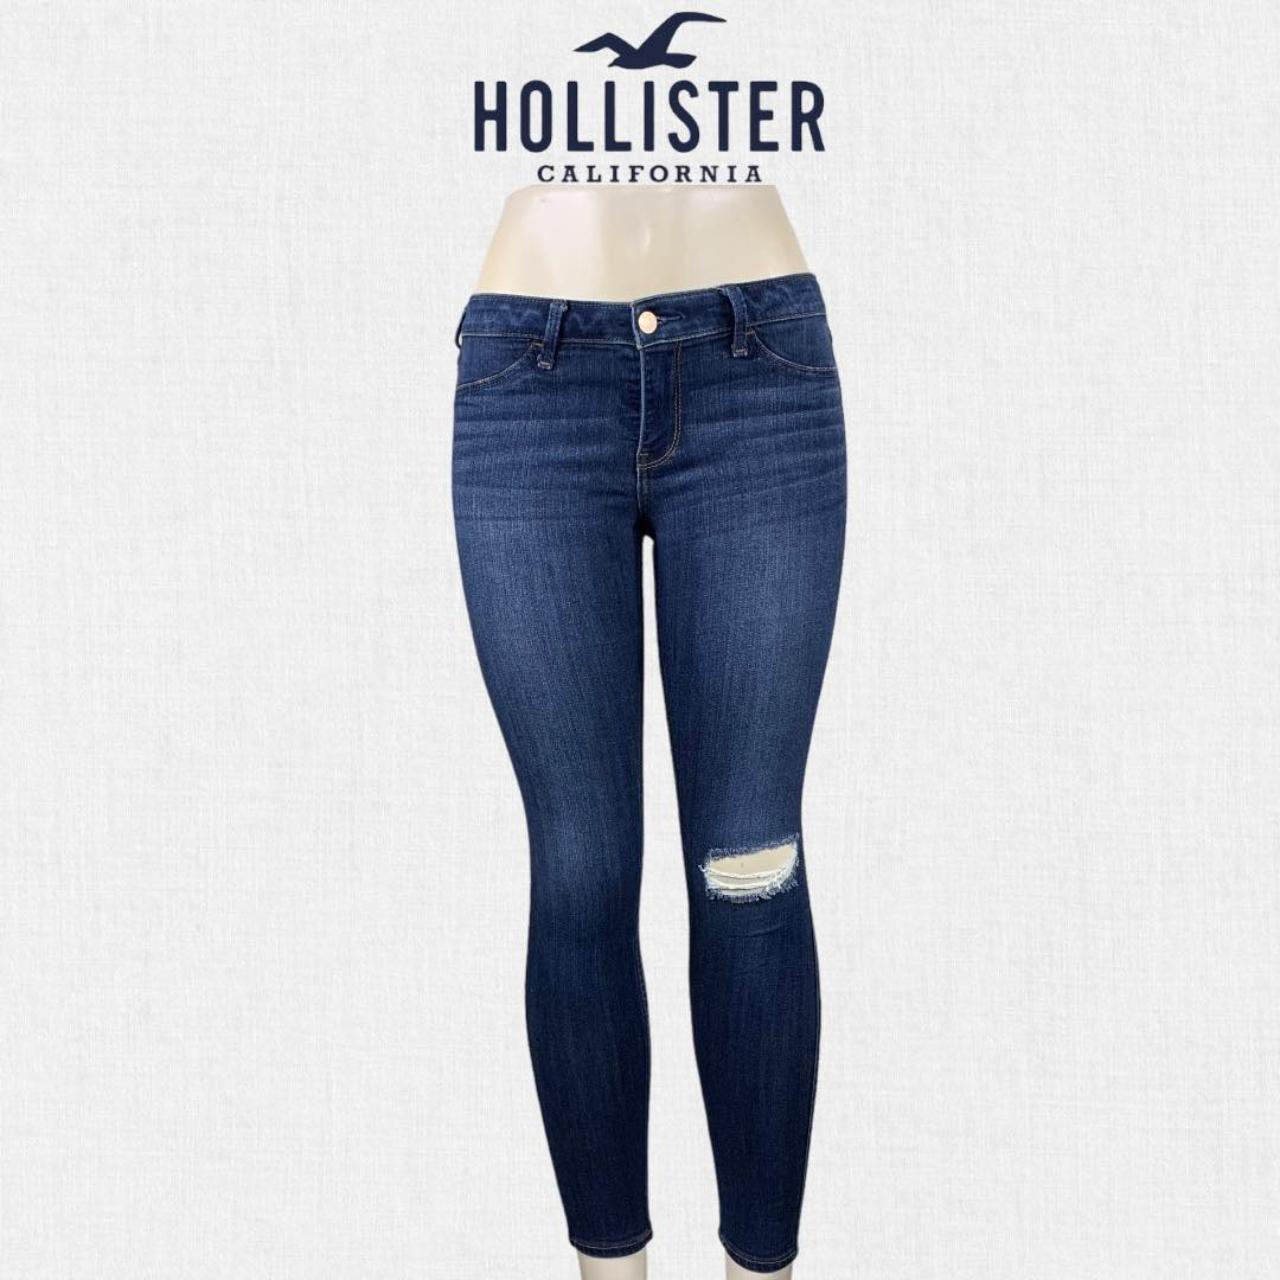 Hollister Women's Jeans Low Rise Jean Legging - Depop